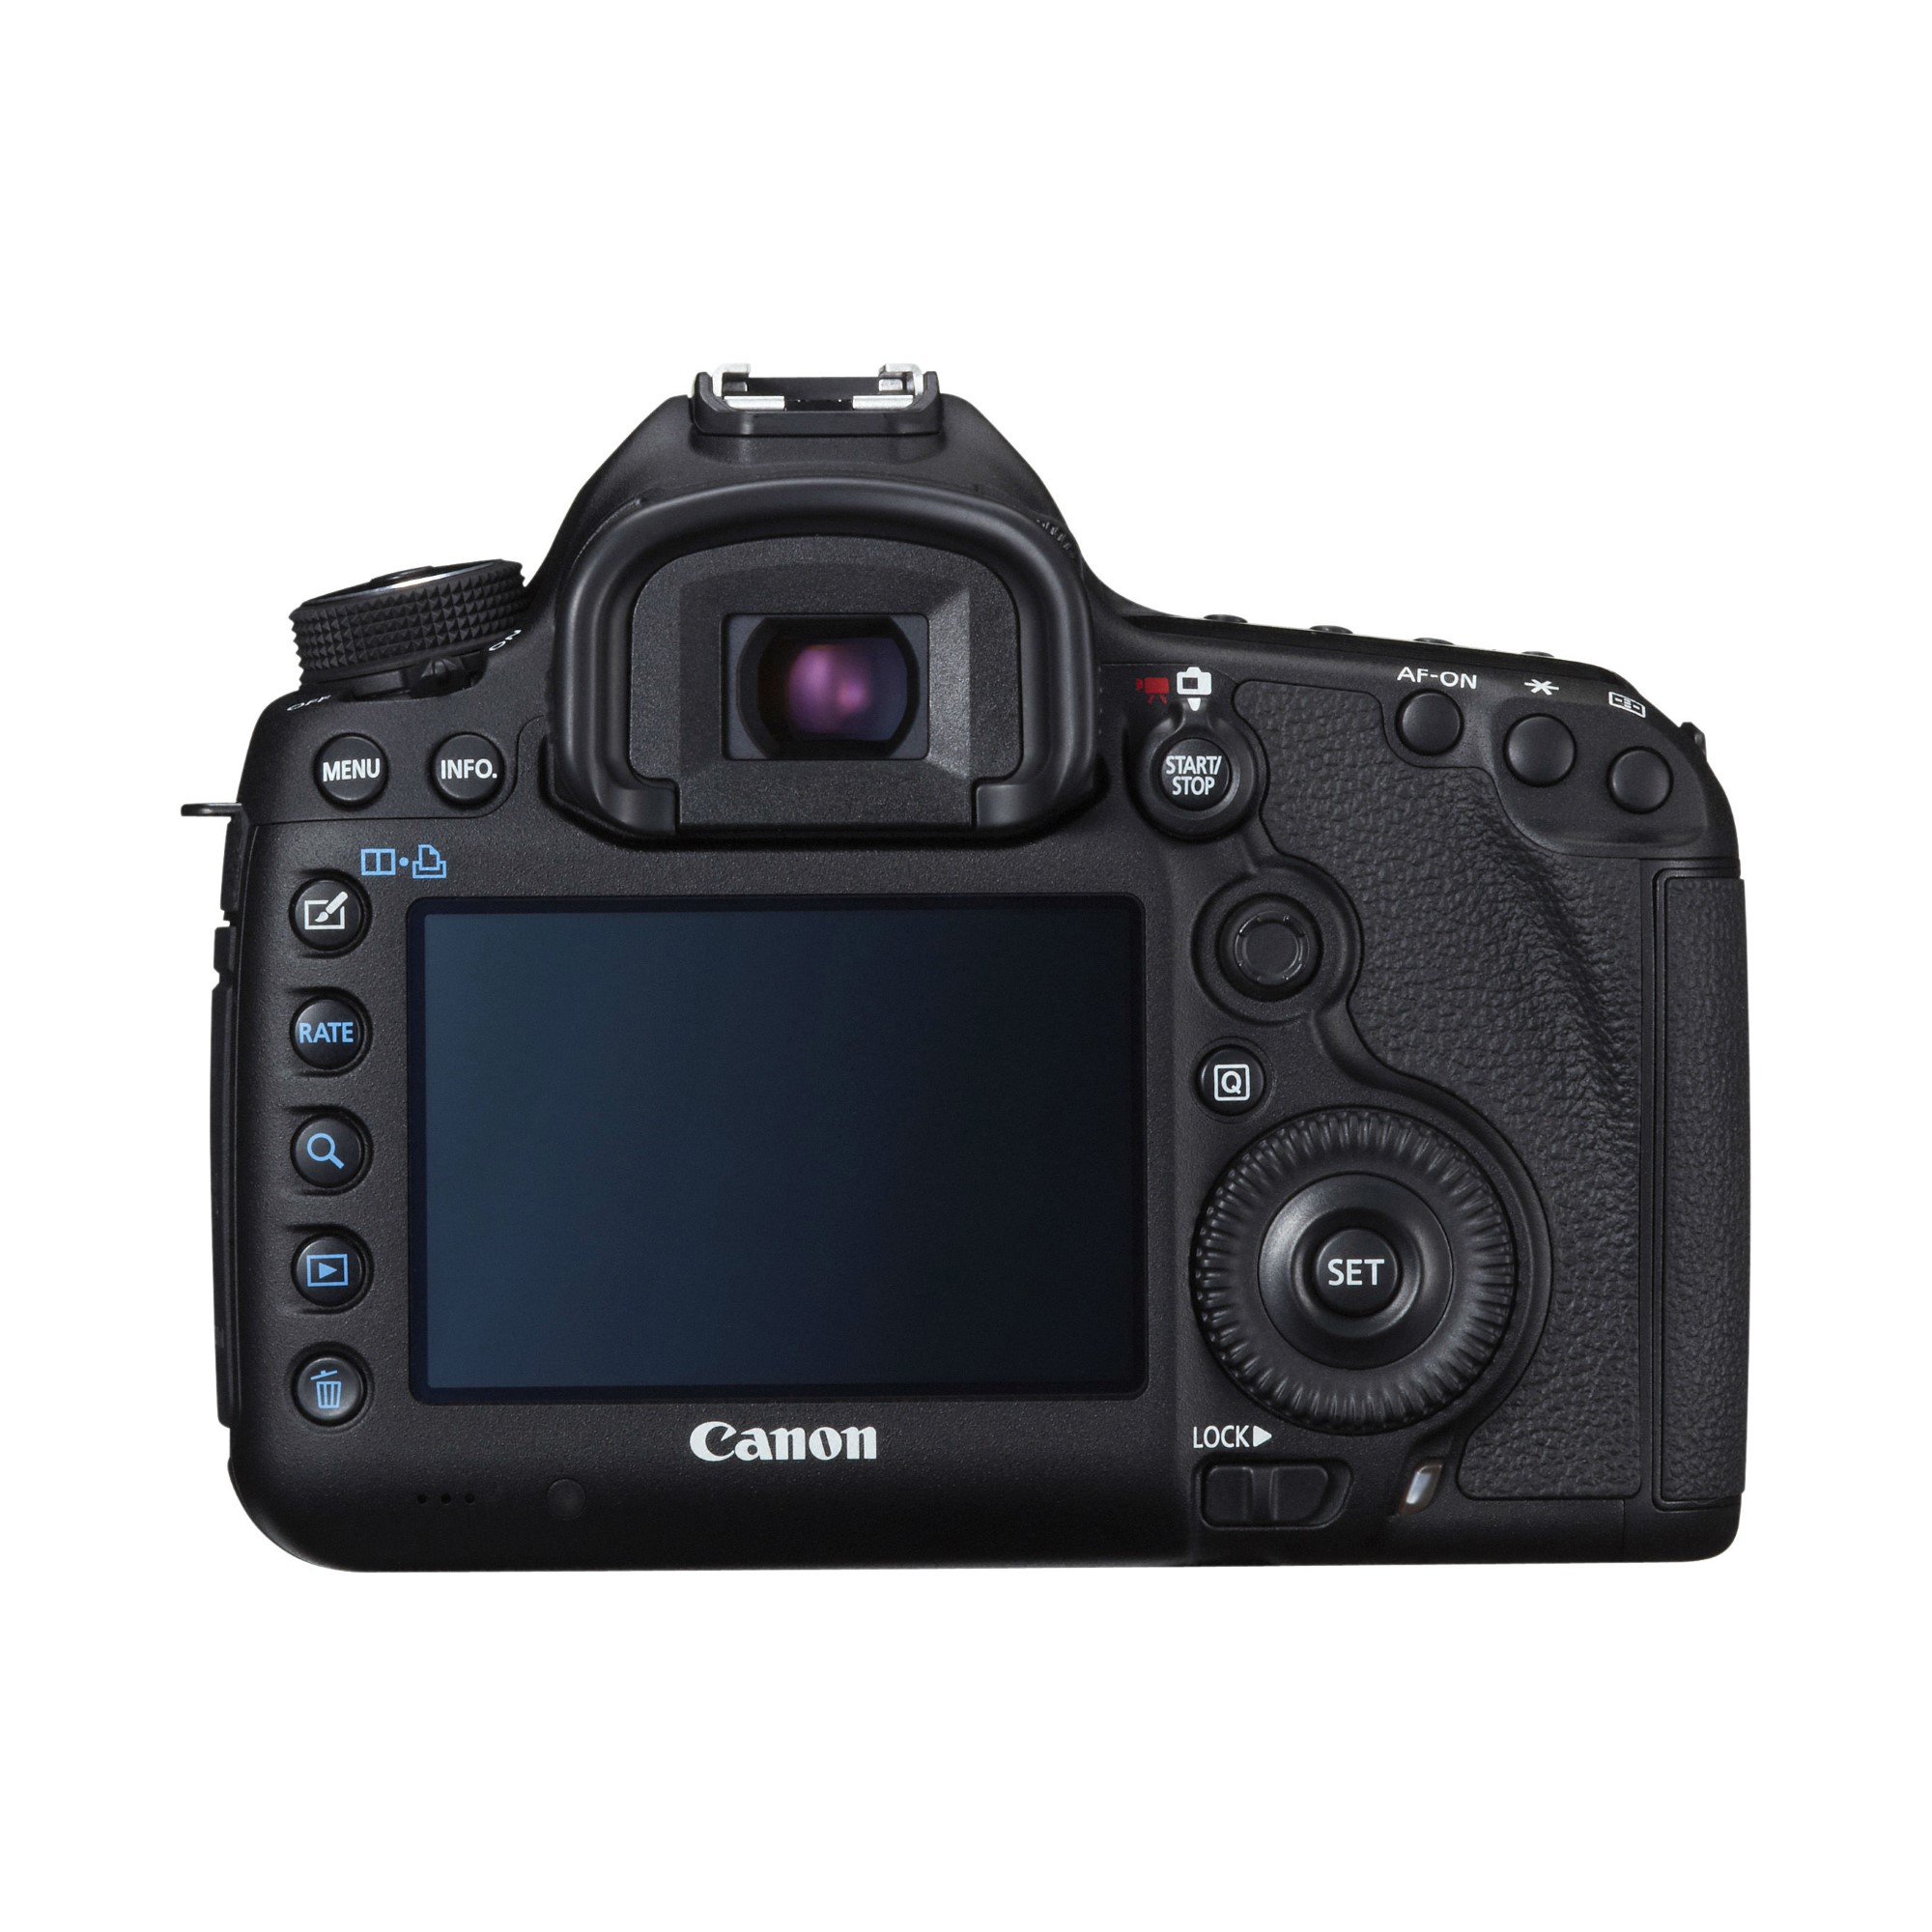 Canon EOS 5D MK III